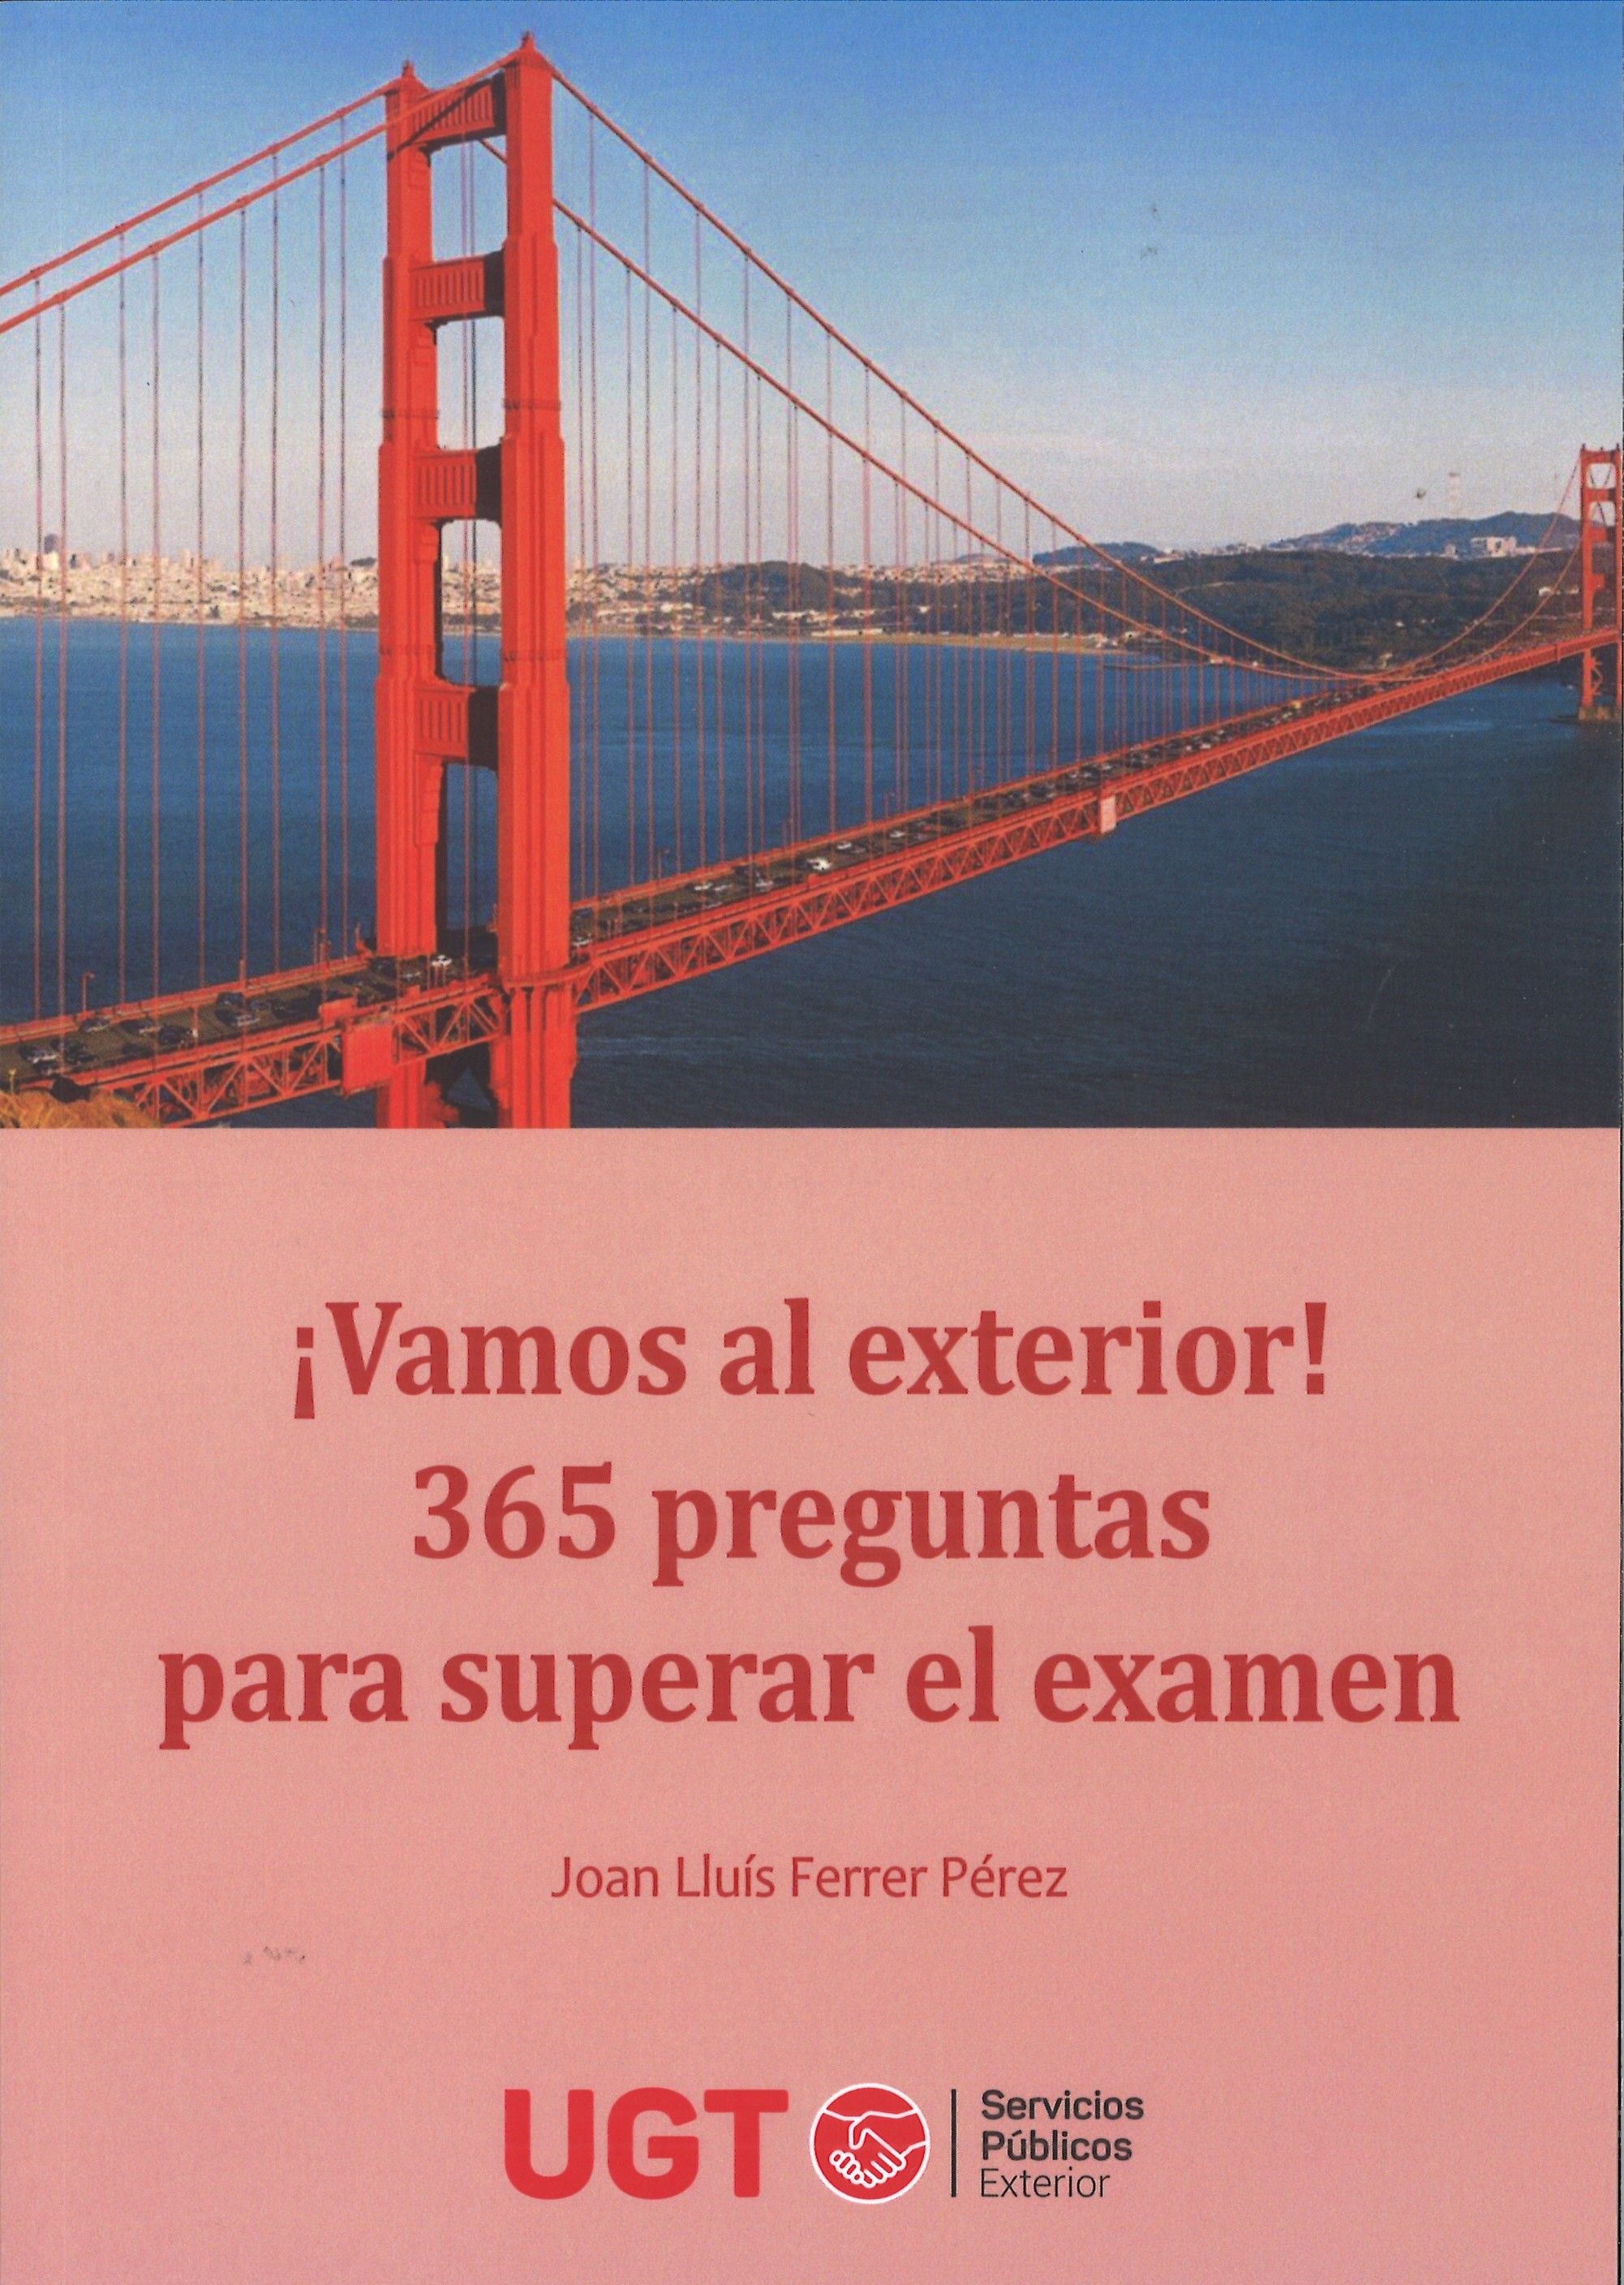 LIBRO VAMOS AL EXTERIOR 365 PREGUNTAS PARA SUPERAR EL EXAMEN 1-